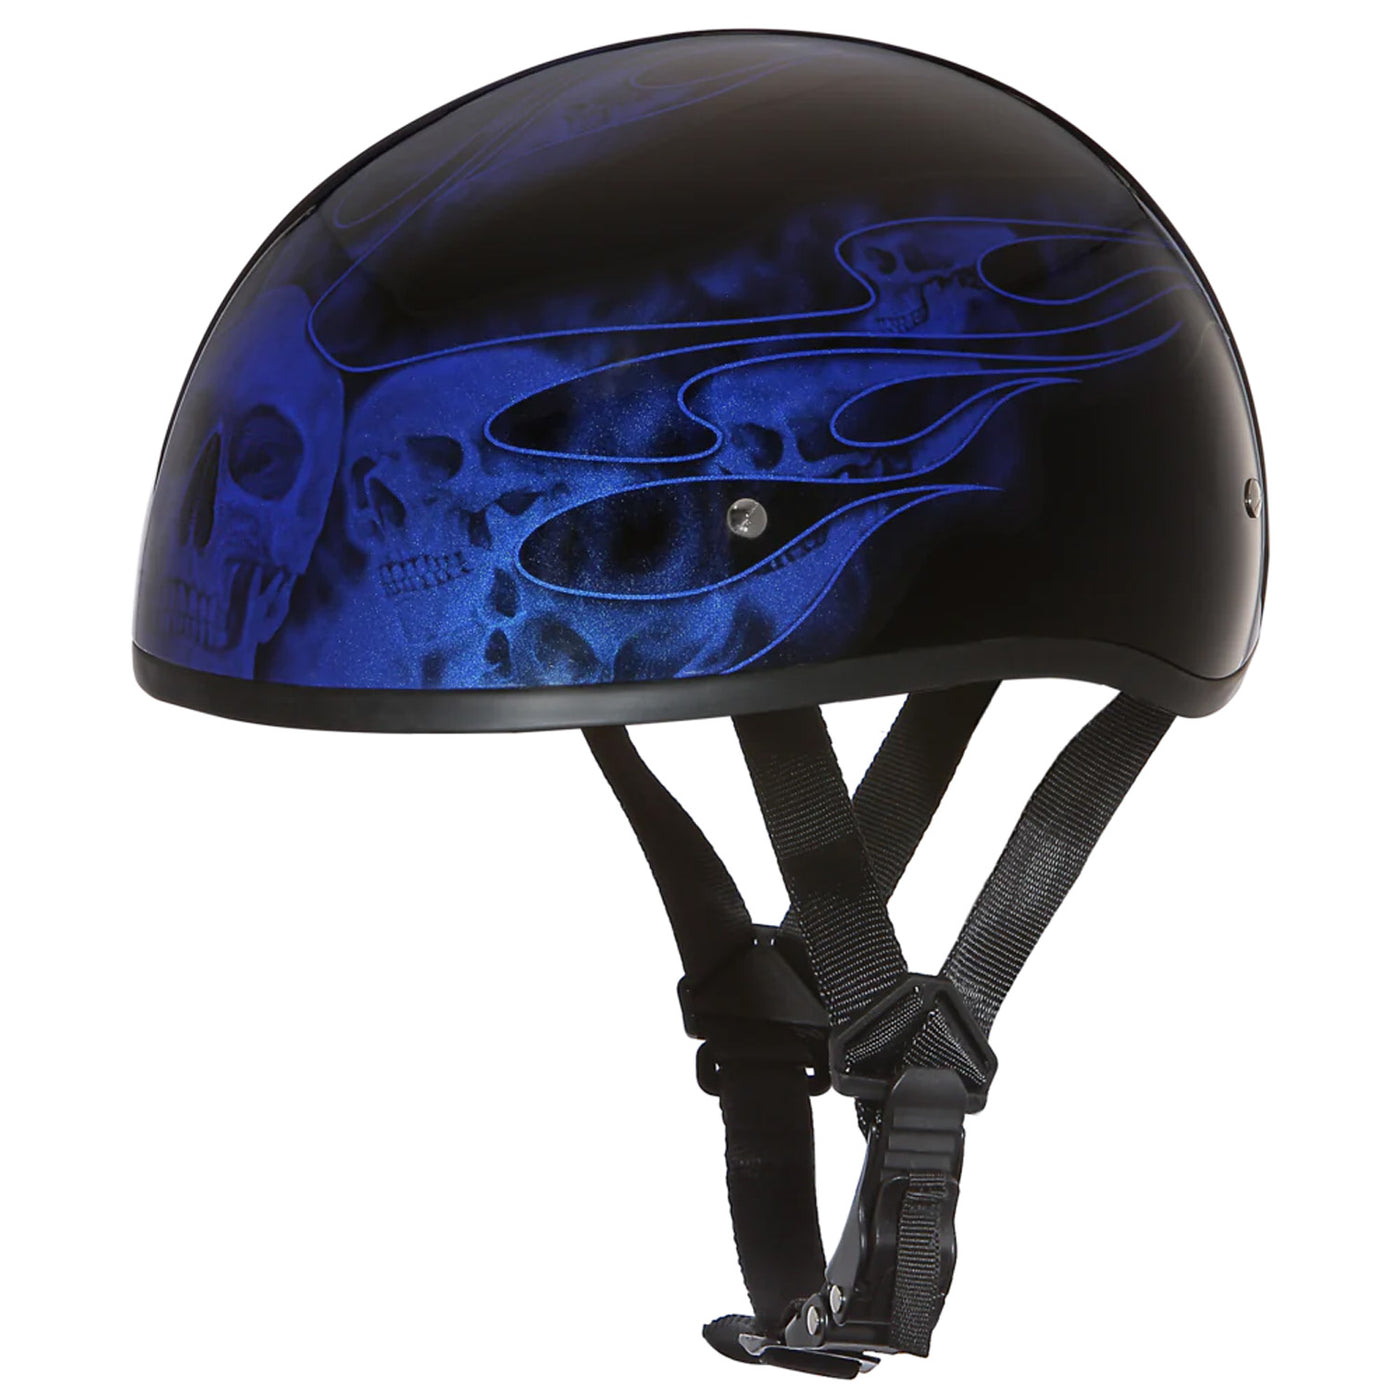 Daytona Helmets D.O.T. Skull Cap - Skull Flames